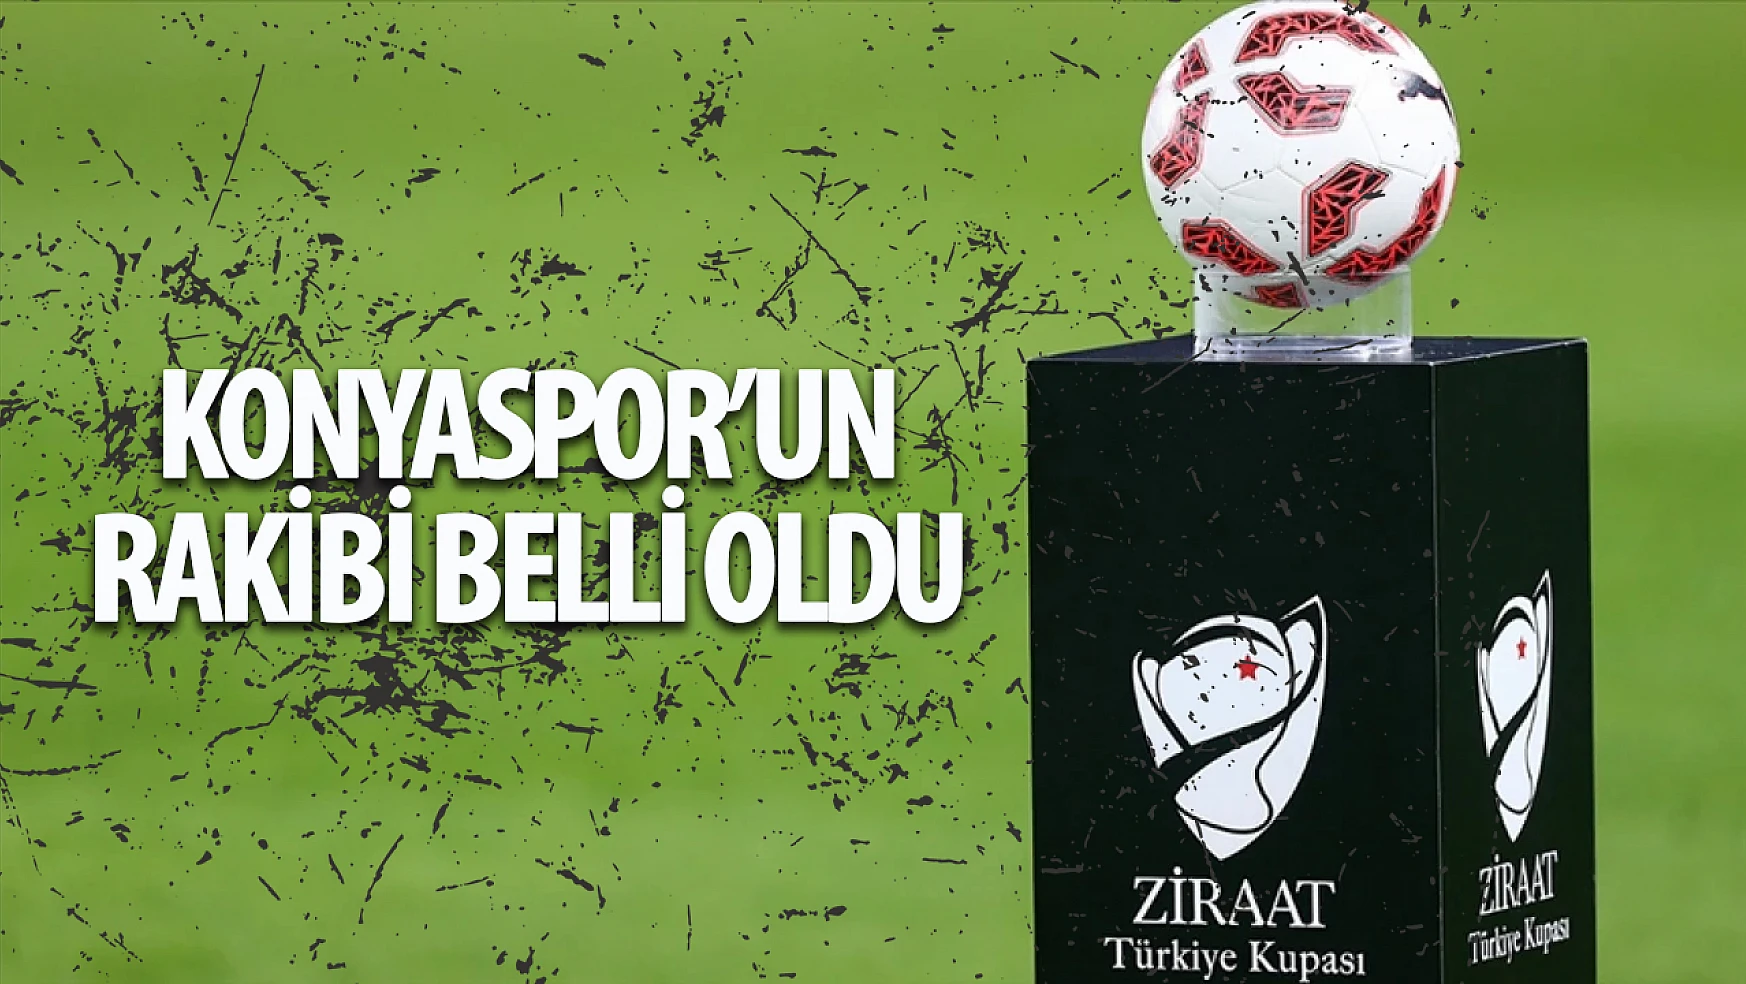 Konyaspor'un Ziraat Türkiye Kupası'ndaki rakibi belli oldu! 